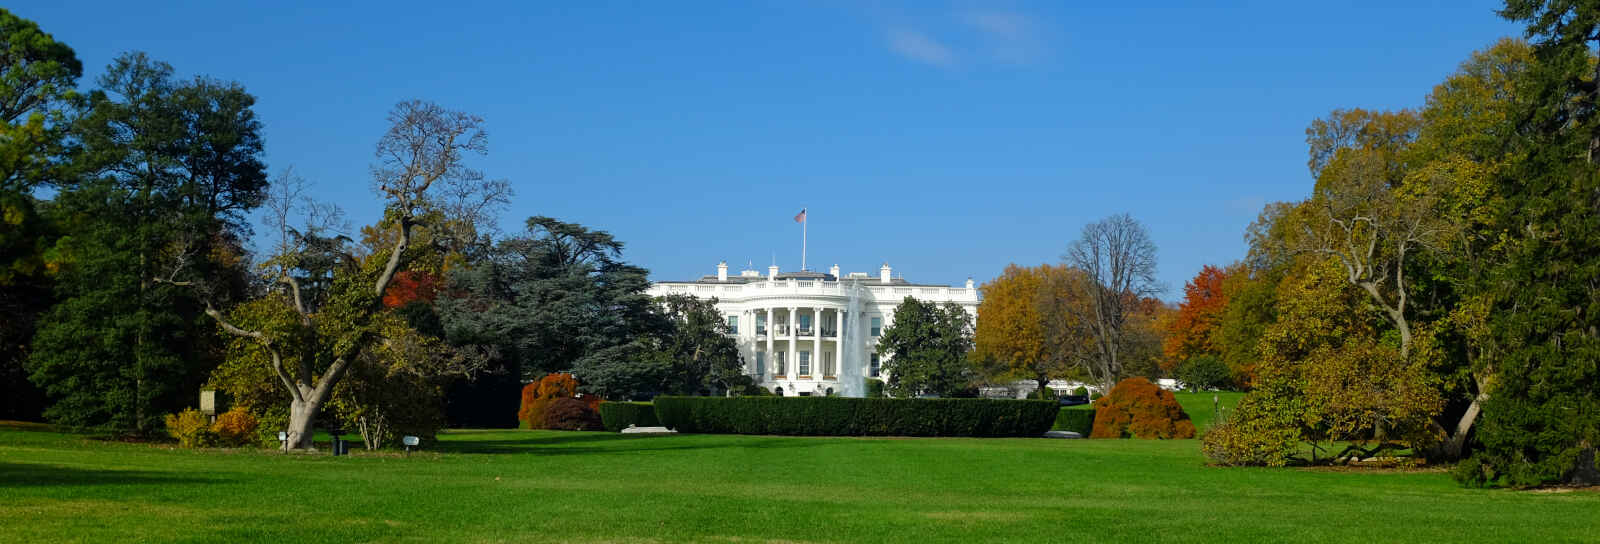 La Maison Blanche, Washington DC, États-Unis